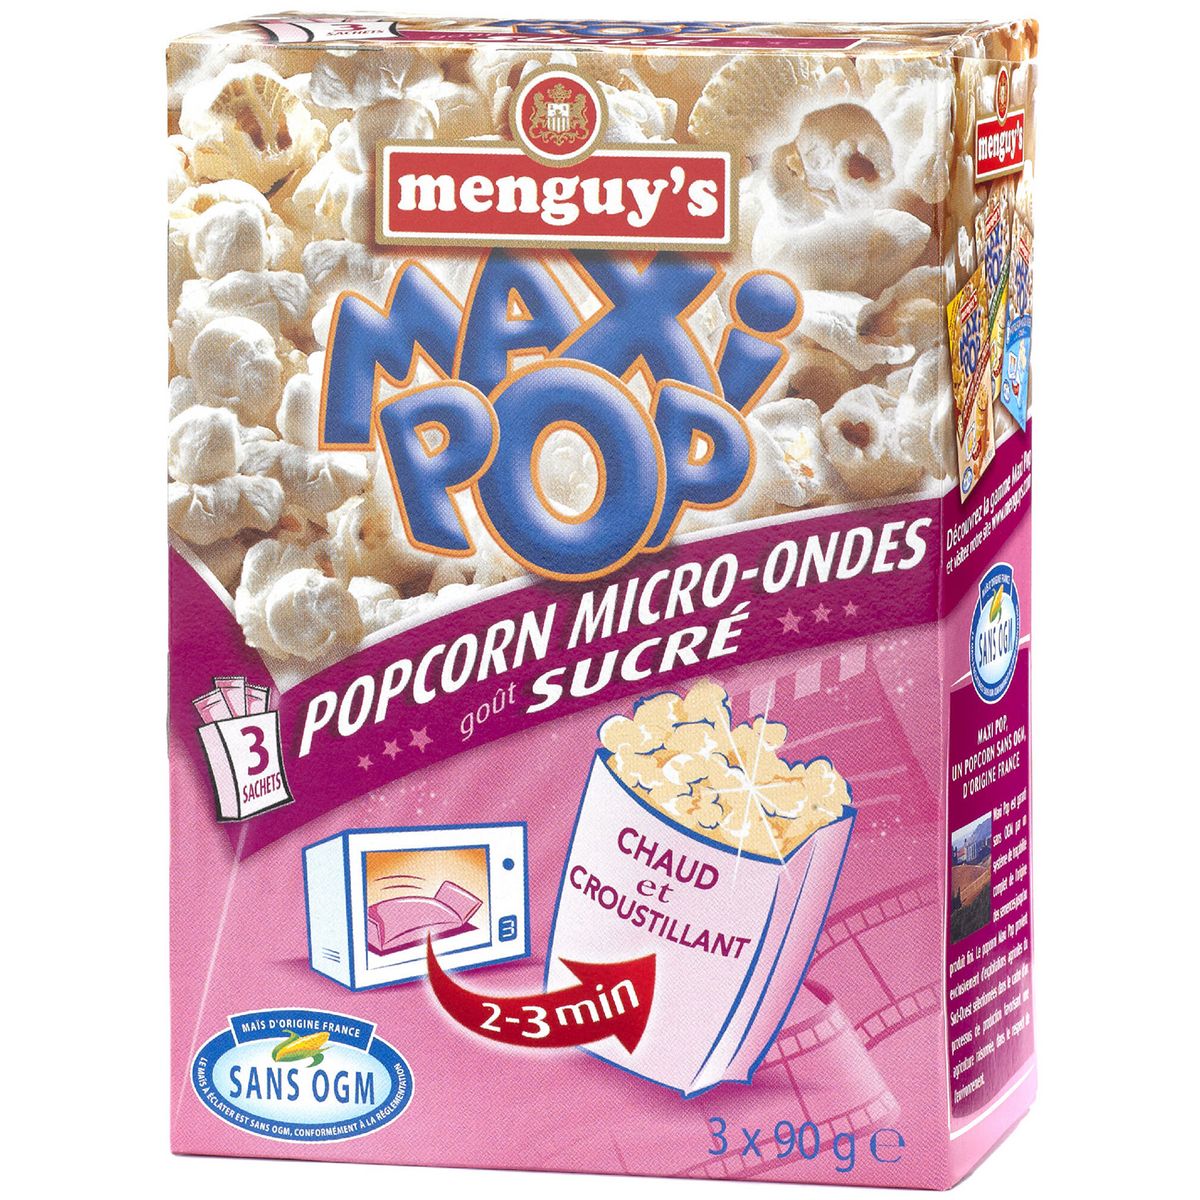 MENGUY'S Maxi pop corn goût sucré micro-ondable 2-3 min sans OGM 3 sachets 3x90g